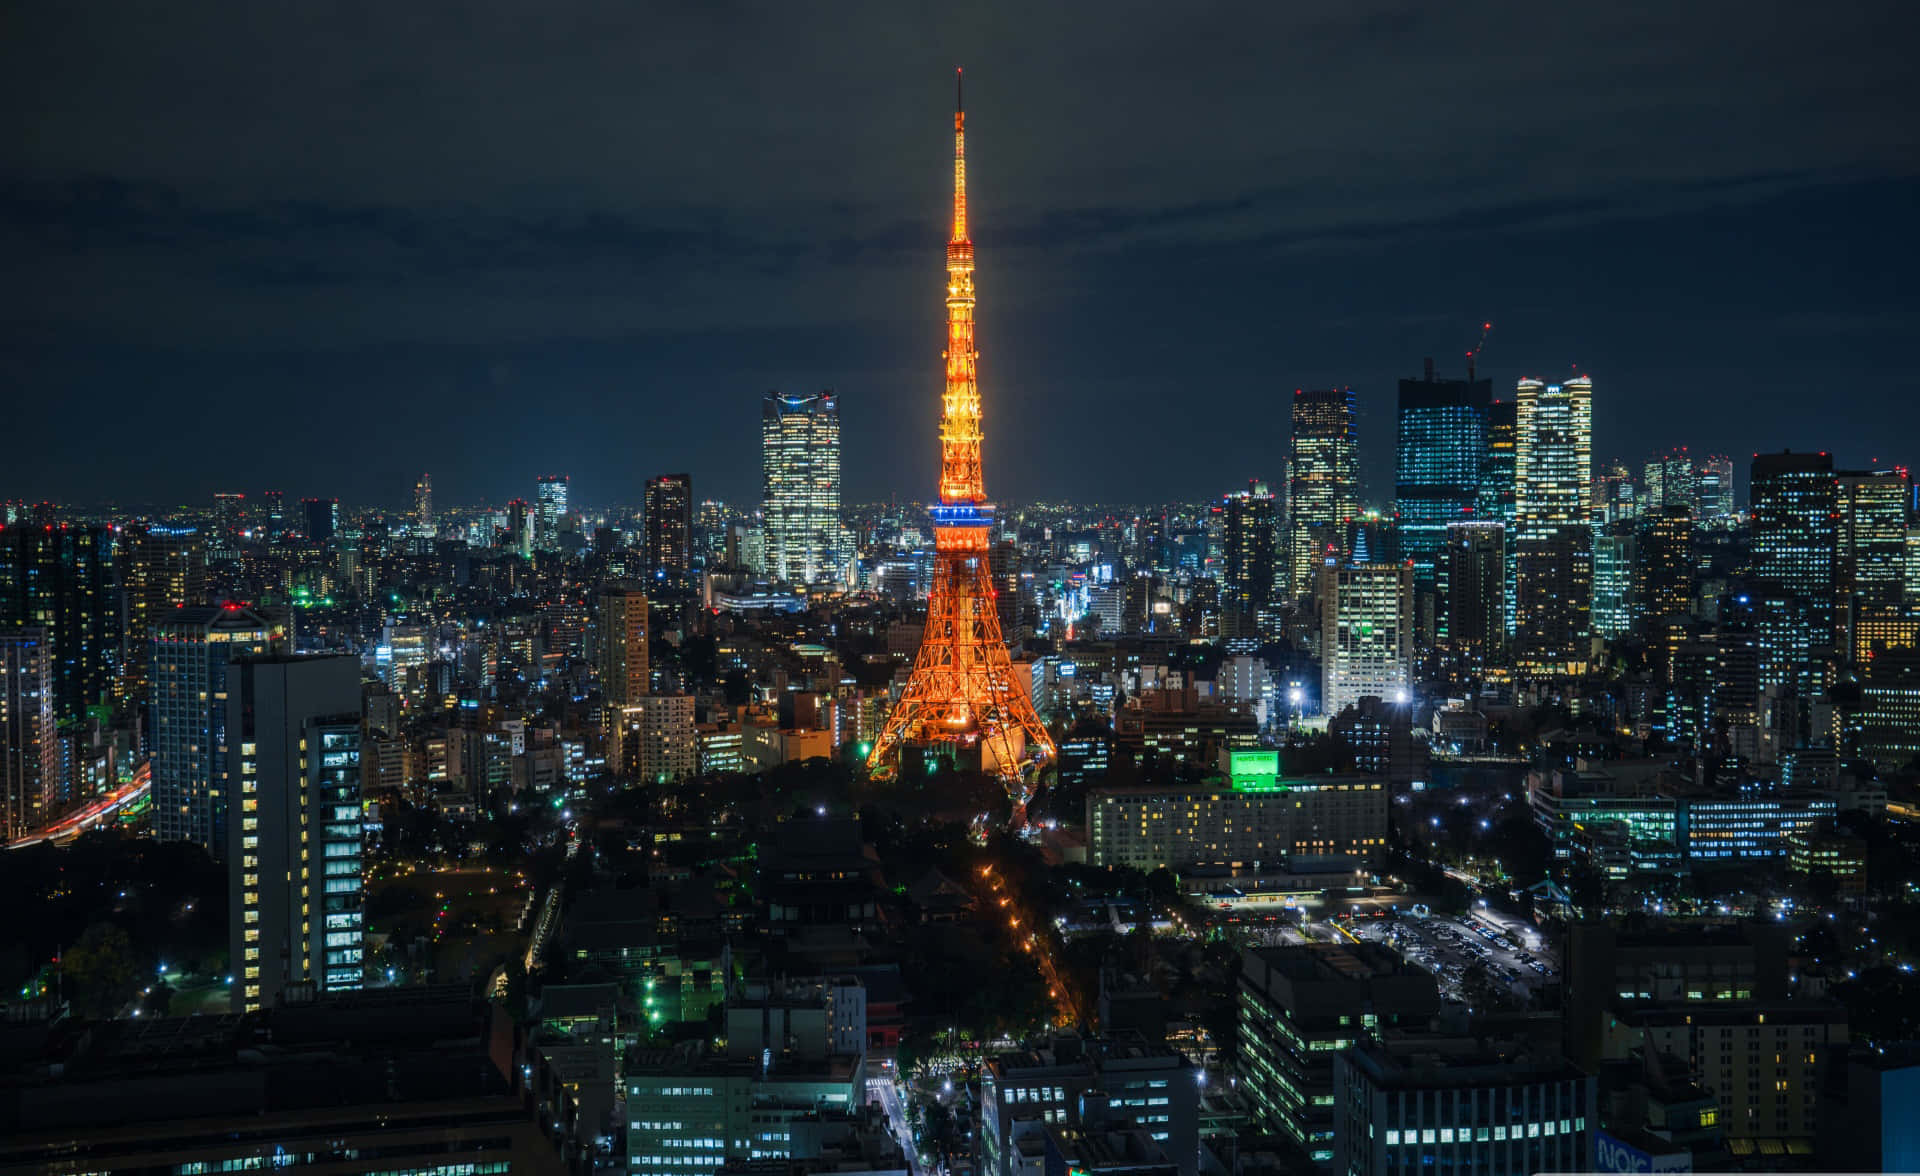 Fondode Pantalla De Tokio Con Un Brillante Color Amarillo Y La Torre De Tokio.